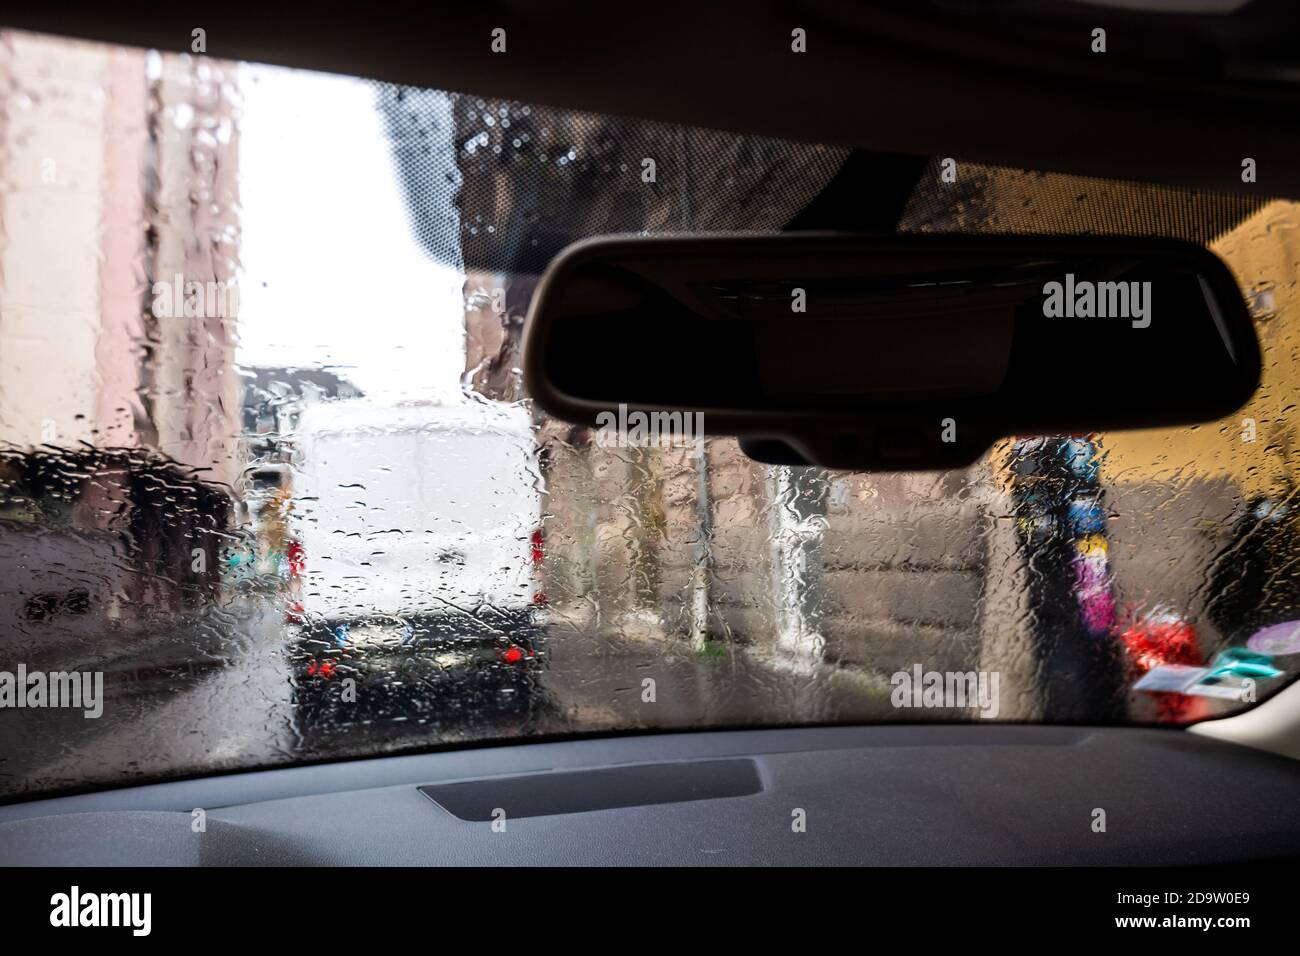 Vista a través del parabrisas del coche con gotas de lluvia el día de otoño En París con la silueta de una furgoneta blanca aparcada en frente Foto de stock